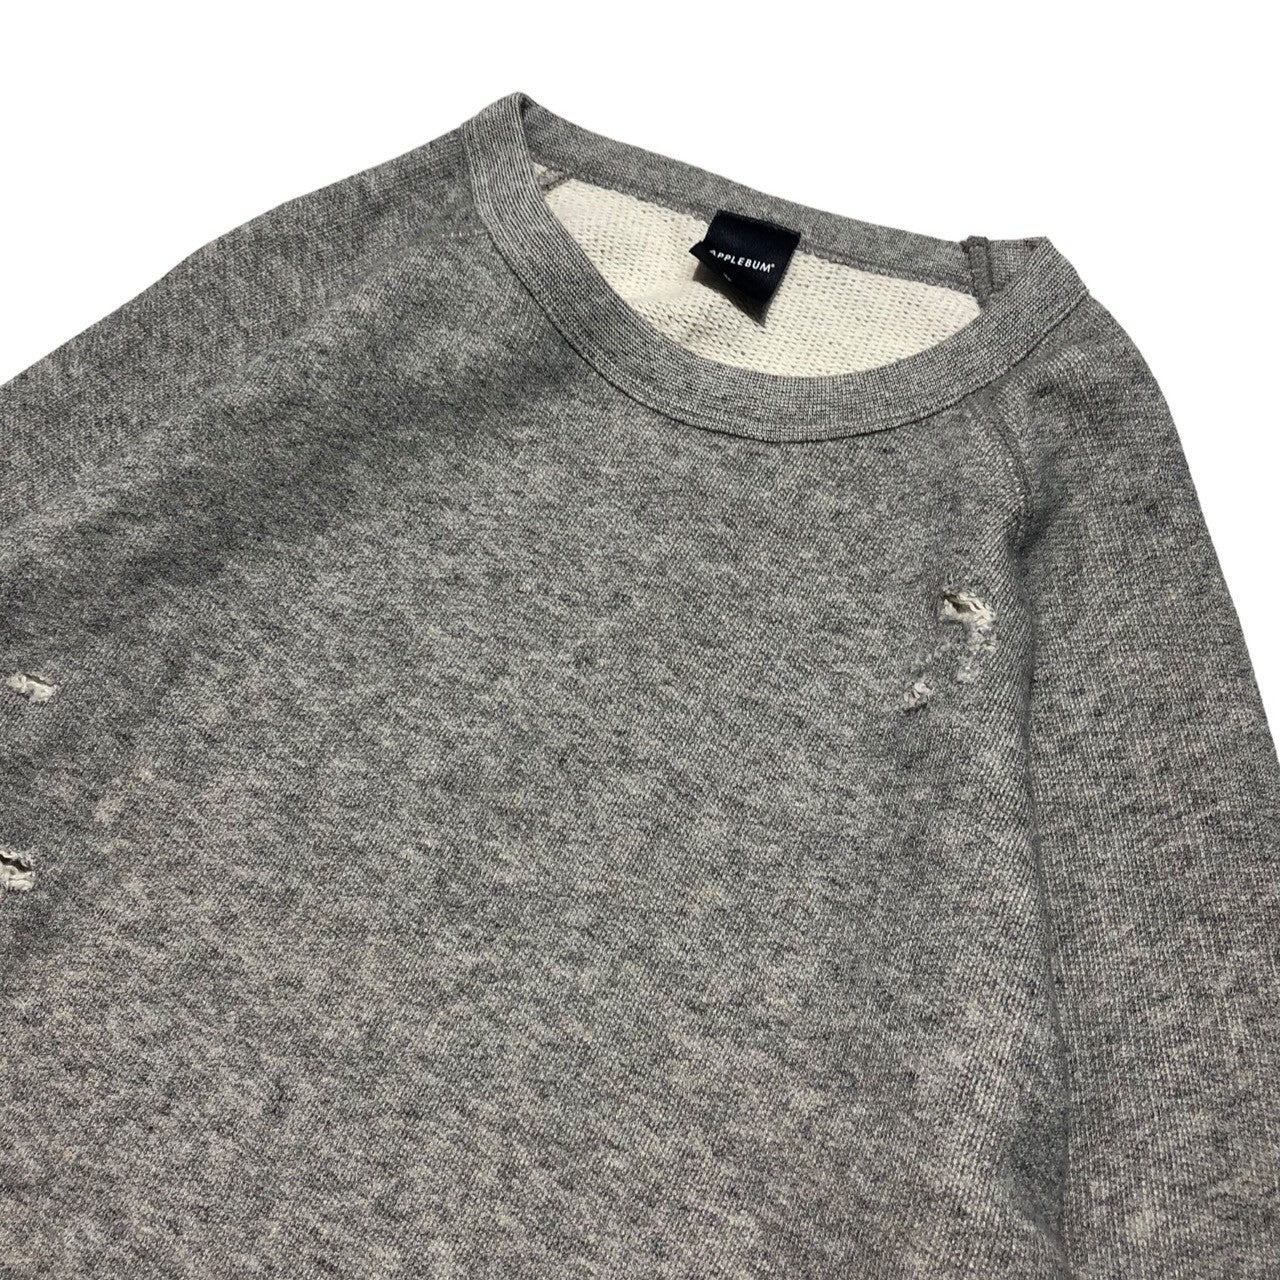 APPLEBUM(アップルバム) Distressed sweatshirt ダメージ 加工 スウェット M グレー